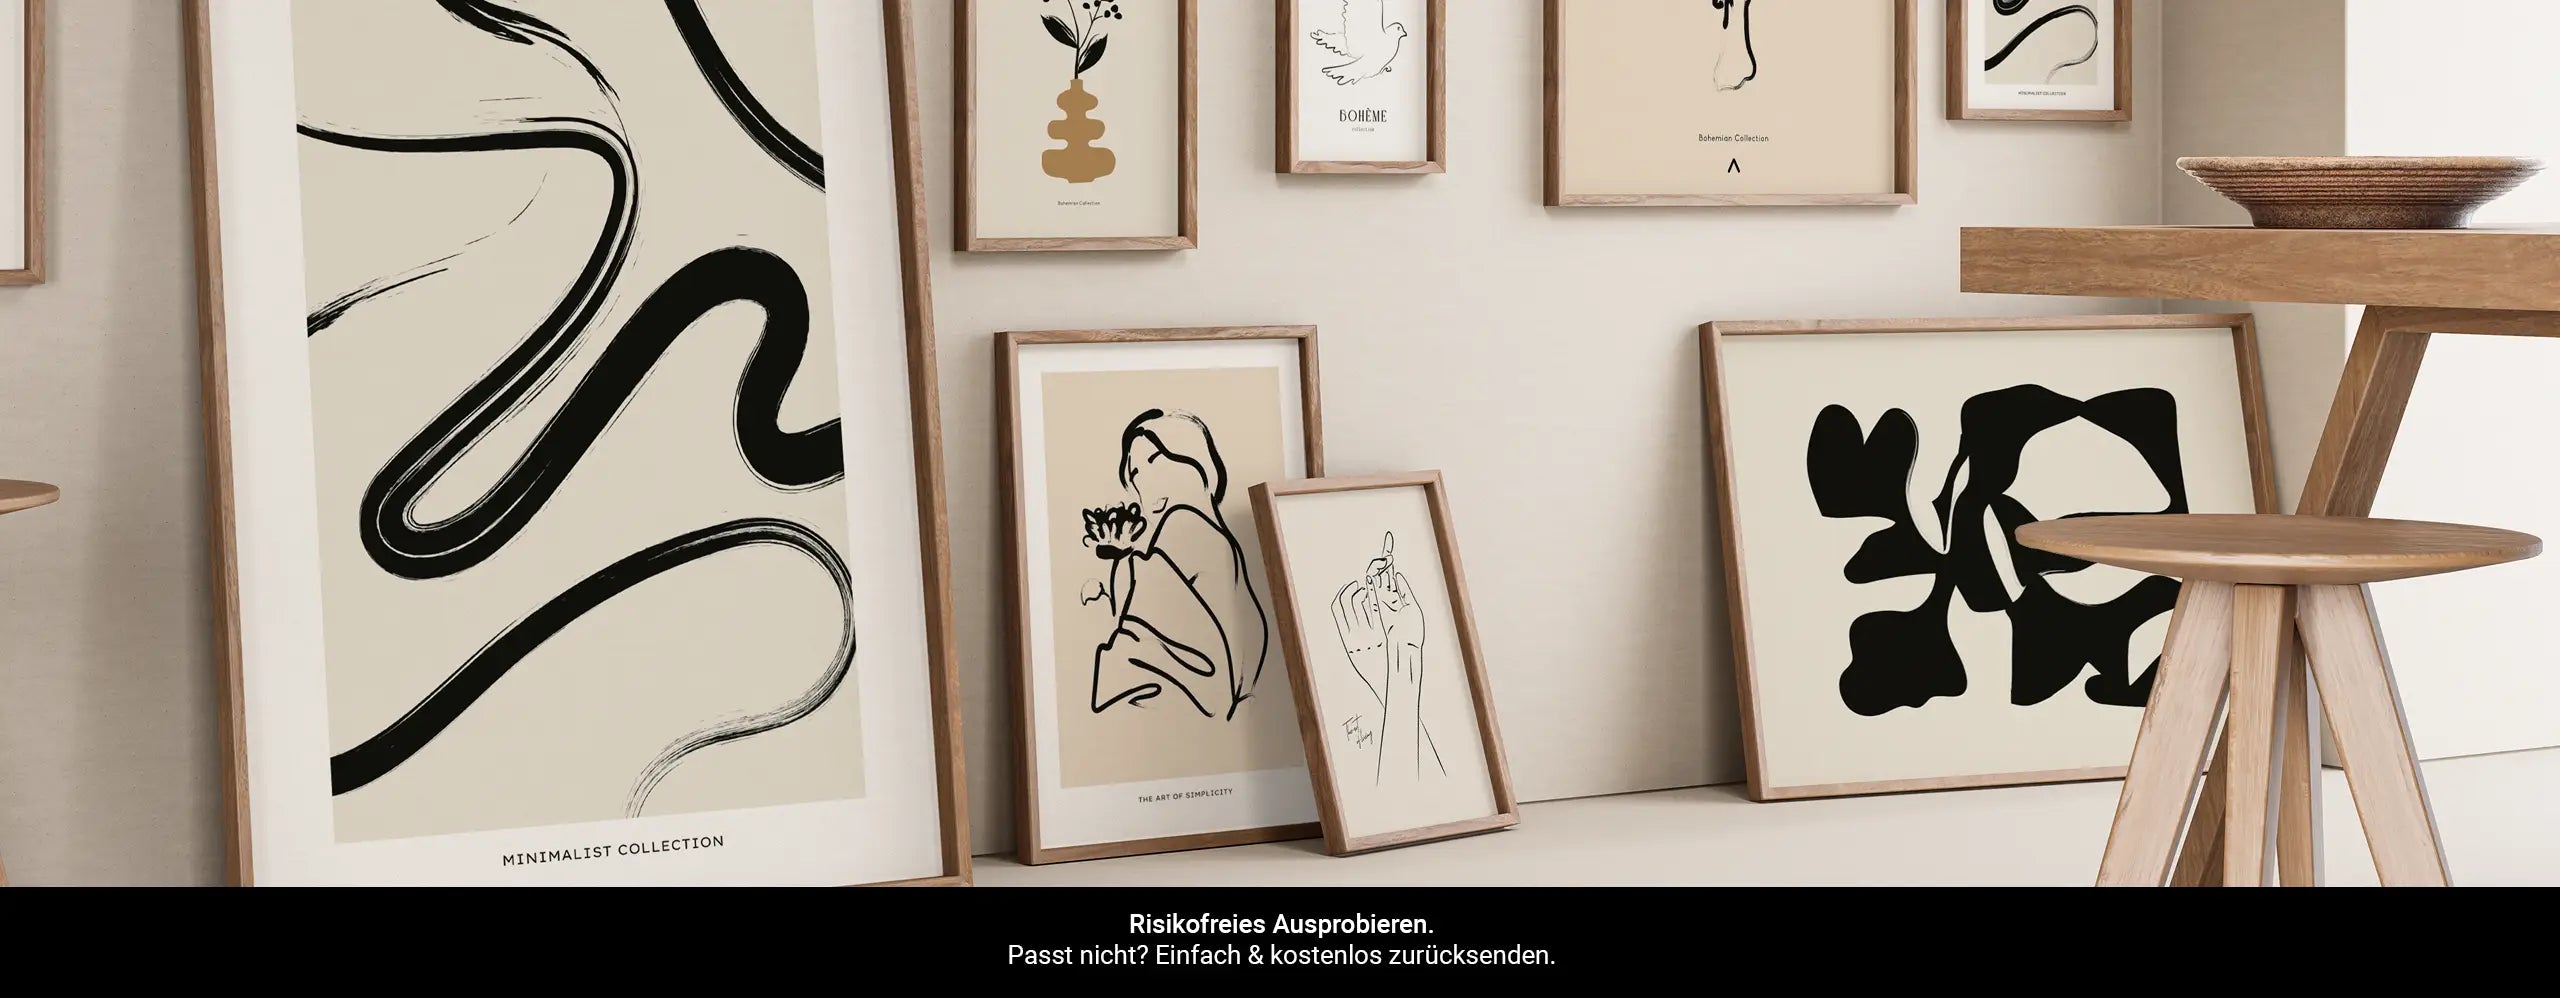 Moderne Kunst Poster mit minimalistischen Linien und dezenten Farbkombinationen aus beige, weiß und schwarz. Design Wandbilder für dein Zuhause.